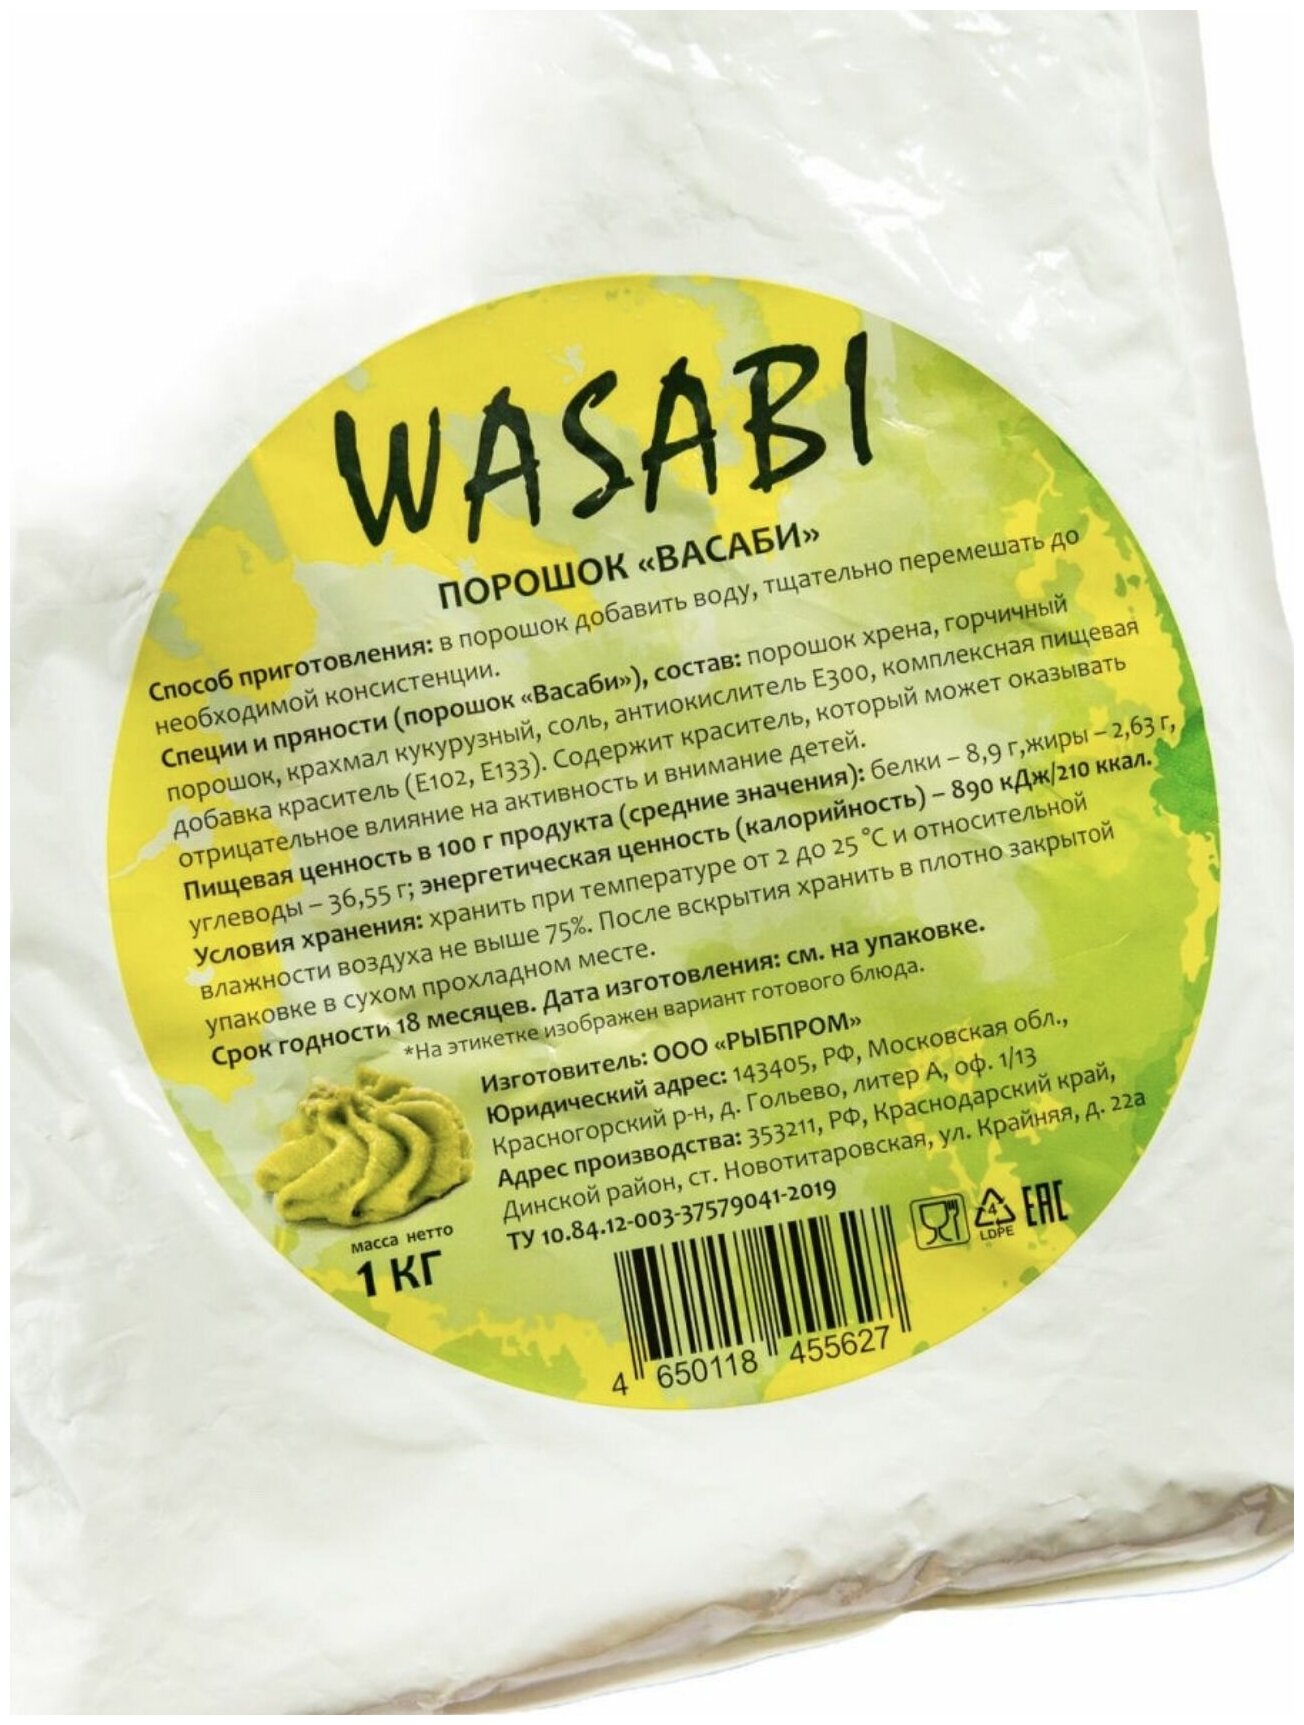 Суши wasabi отзывы фото 68